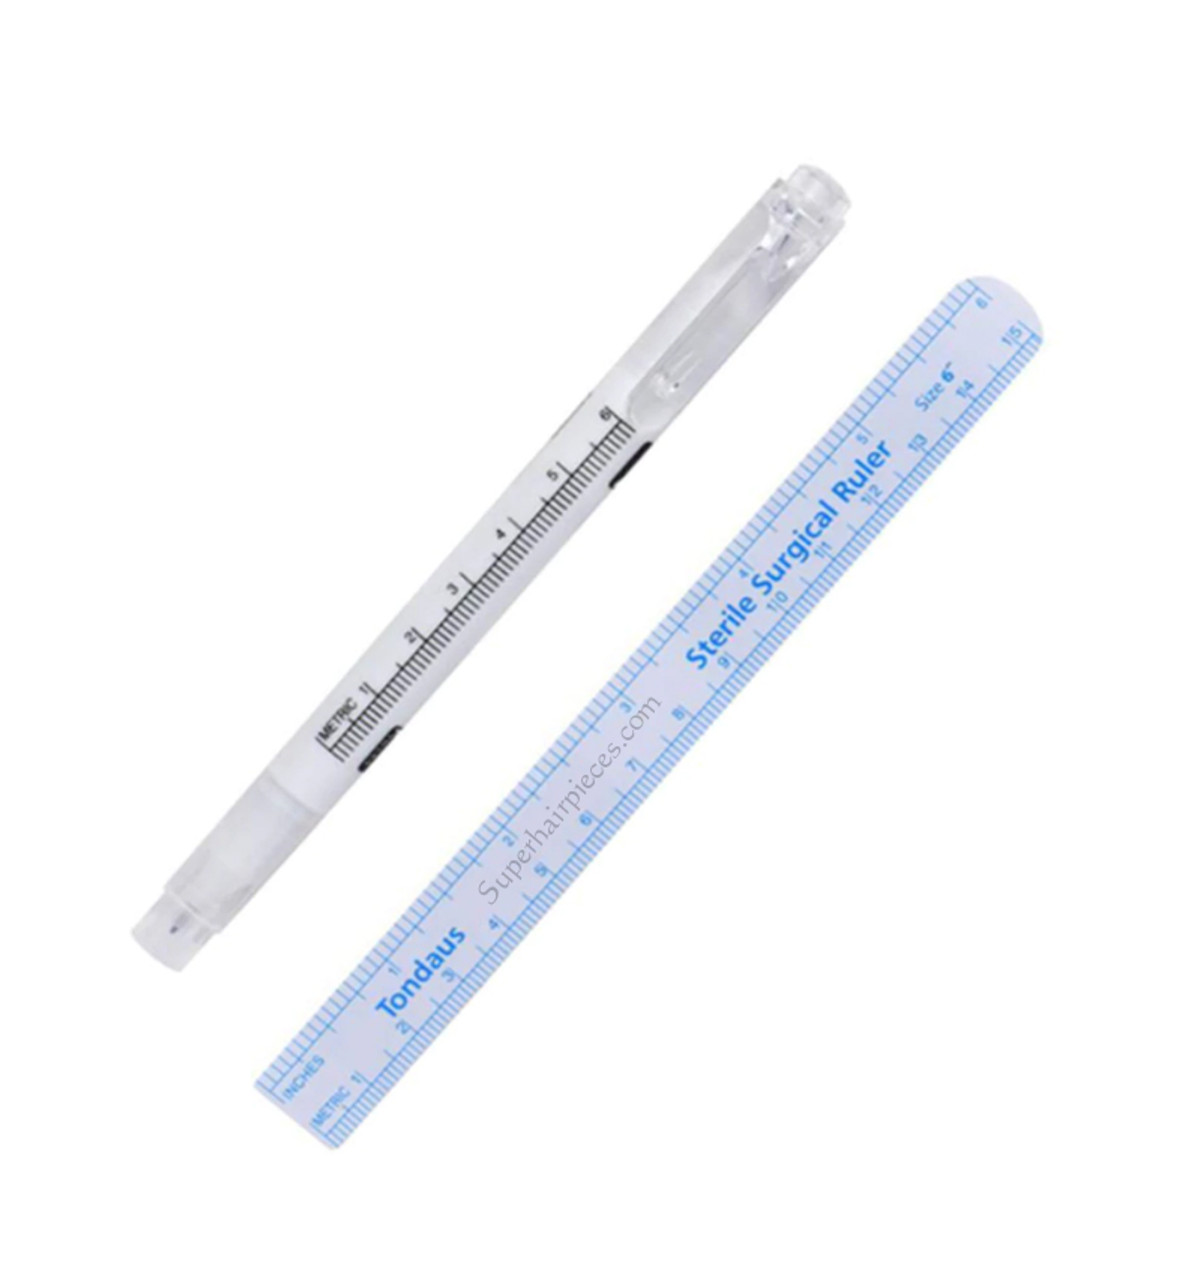 Skin marker & ruler, sterile, 36 pcs - Suture Online